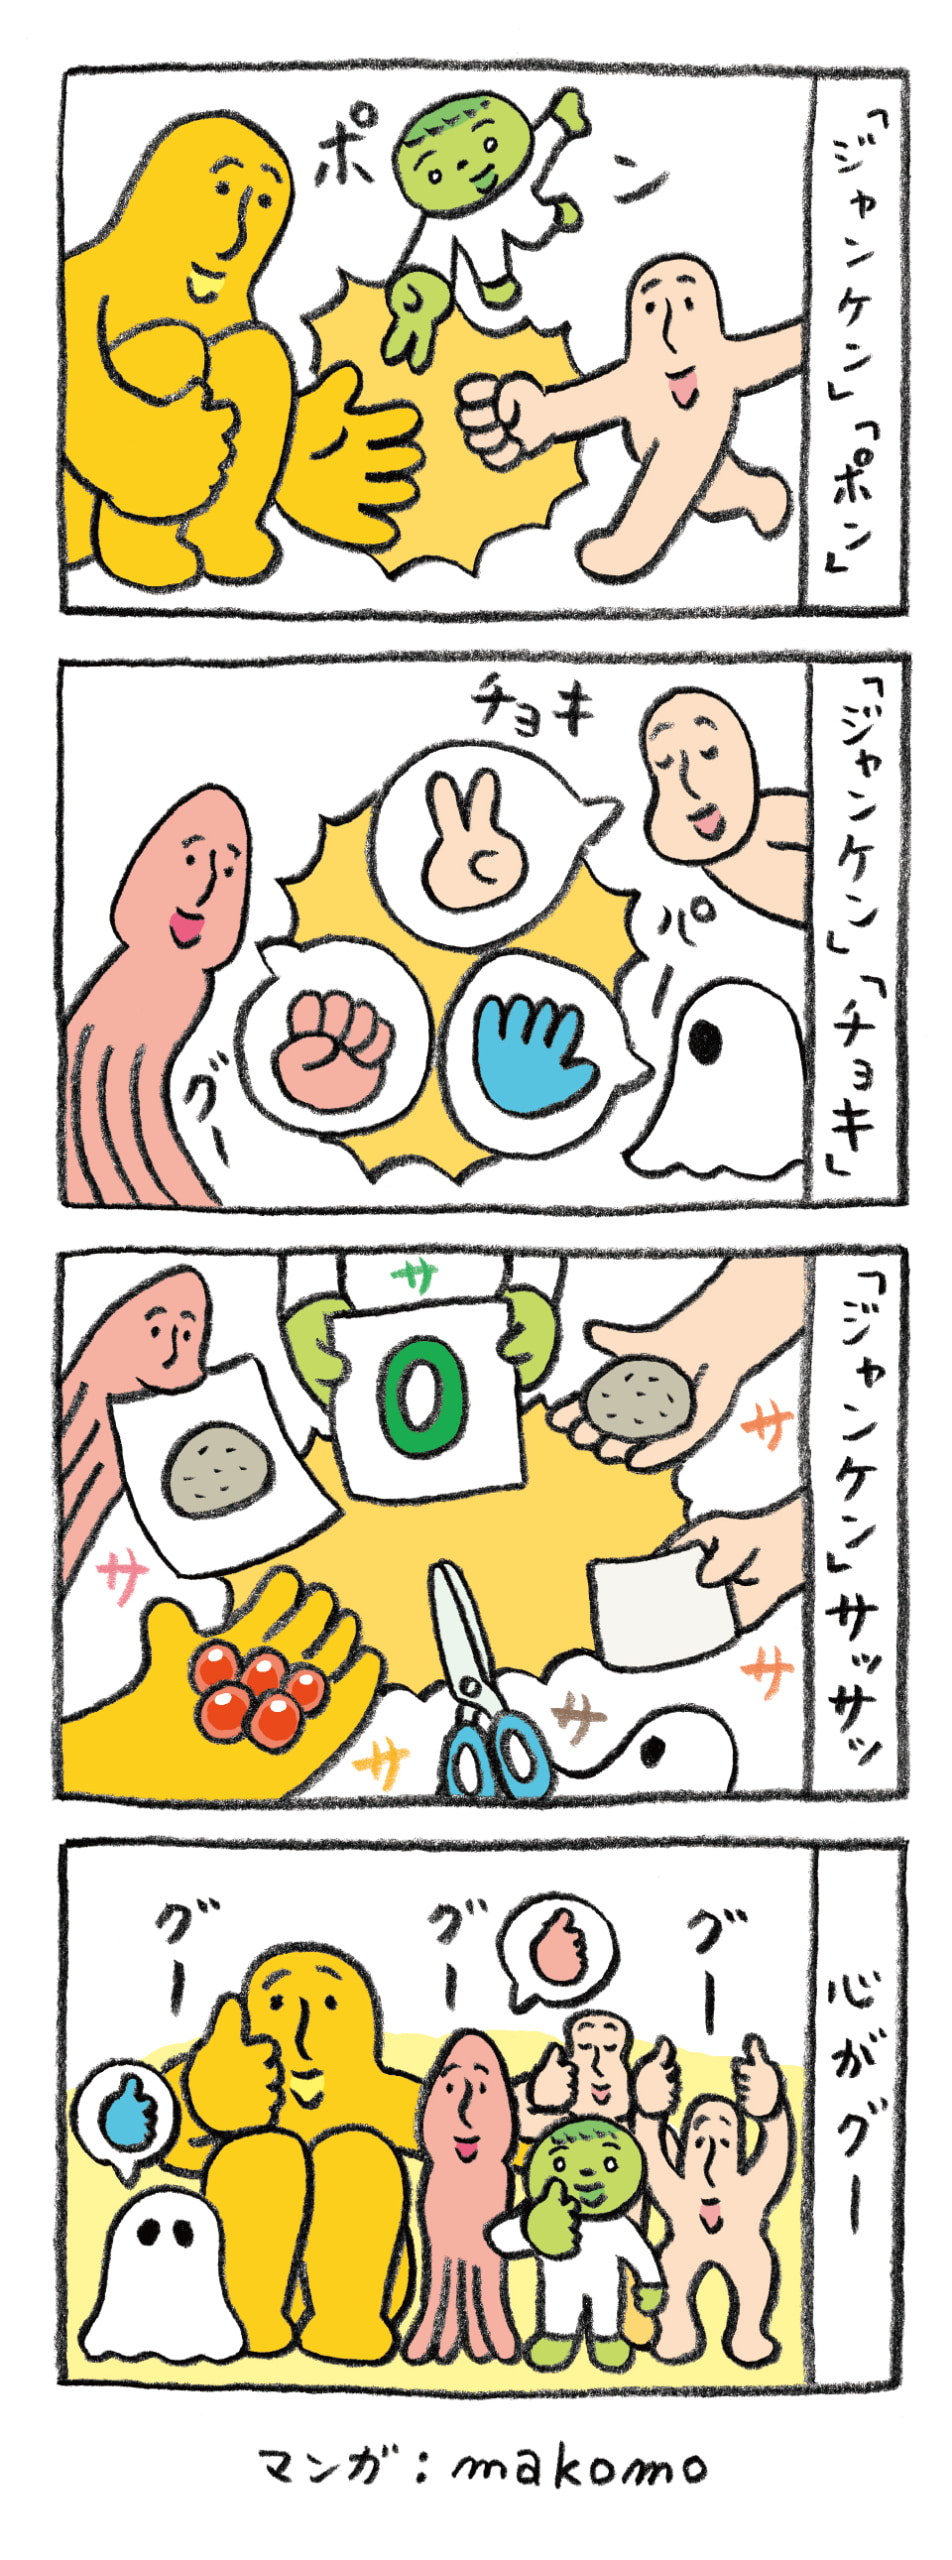 【イラスト】イラストレーターのmakomoによる4コマ漫画。1コマ目、画面左に膝を折りたたんで座る大きな黄色のヒト型生物、中央上部に白い全身タイツを着た緑色のヒト型生物、右にはベージュ色のヒト型生物が、ジャンケンで遊んでいる。それぞれ手の指を使って「パー」「グー」「チョキ」を出し、アイコとなる。2コマ目、今度は画面左にイカのような4本足の生物、右上に1コマ目とは顔の形の違うベージュ色のヒト型生物、右下には白いベールをかぶったような生物が、それぞれ声を使って「グー」「チョキ」「パー」を出し、アイコとなる。3コマ目には、1〜2コマで登場したキャラクターが思い思いに「グー」「チョキ」「パー」や「グー」「チョキ」「パー」以外のものも出してアイコとなる。紙に描いた石ころ・数字や、実物のはさみ・赤い木の実・石ころ、何も描かれていない真っ白な紙など。4コマ目、登場したキャラクターたち全員が正面を向いて集合し、「グー」と言いながらそれぞれの親指を突き出している。画面右端には「心がグー」とテキスト表示されている。